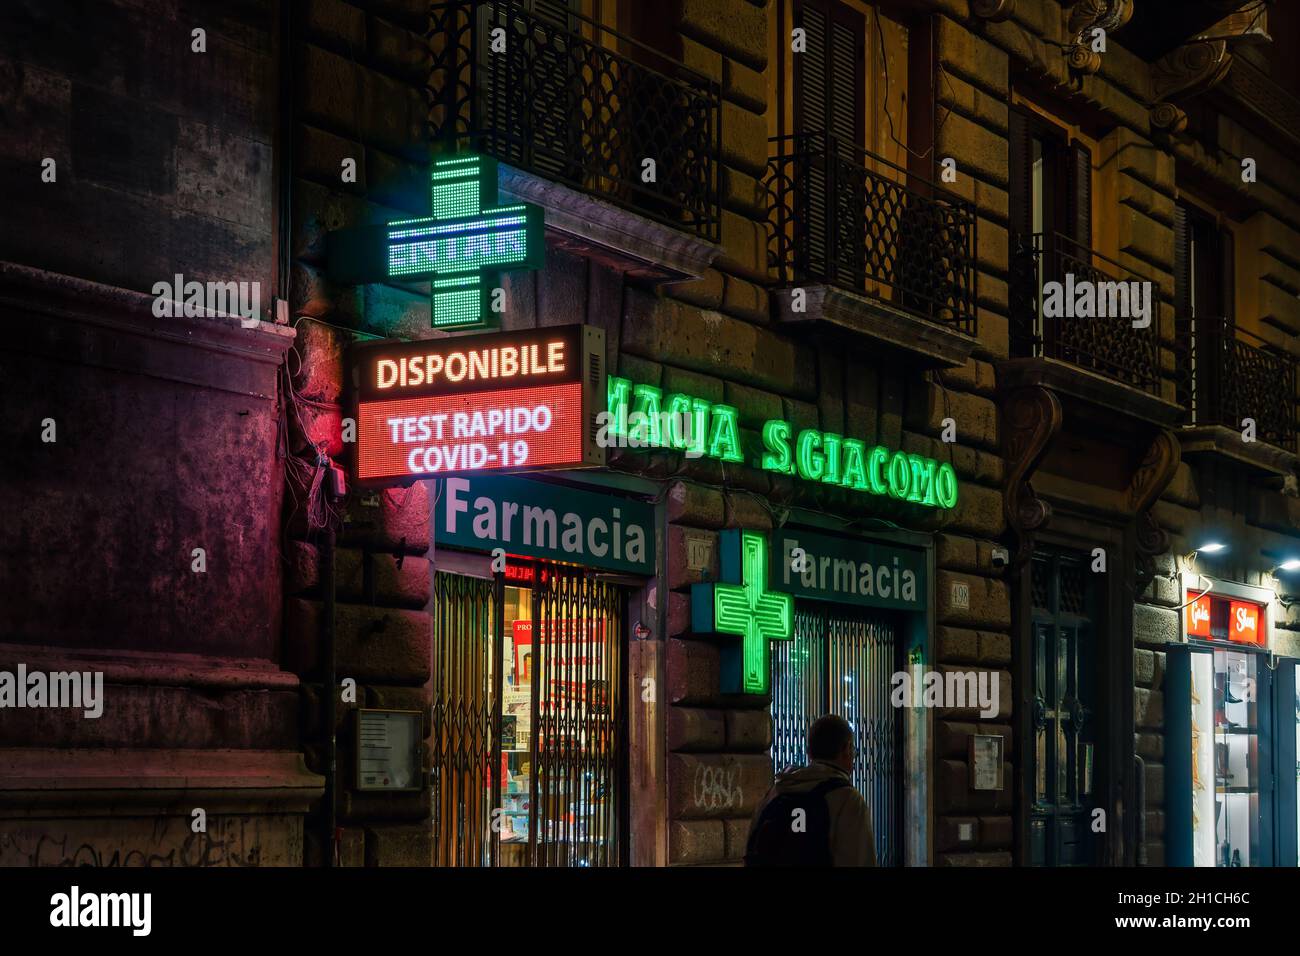 Rom, Italien Öffnen Sie den Eingang des Apotheken-Geschäfts mit dem Schnelltestschild Covid-19. Außenansicht des italienischen Pharmazeutikladens mit beleuchtetem grünen Display und Schaufenster. Stockfoto